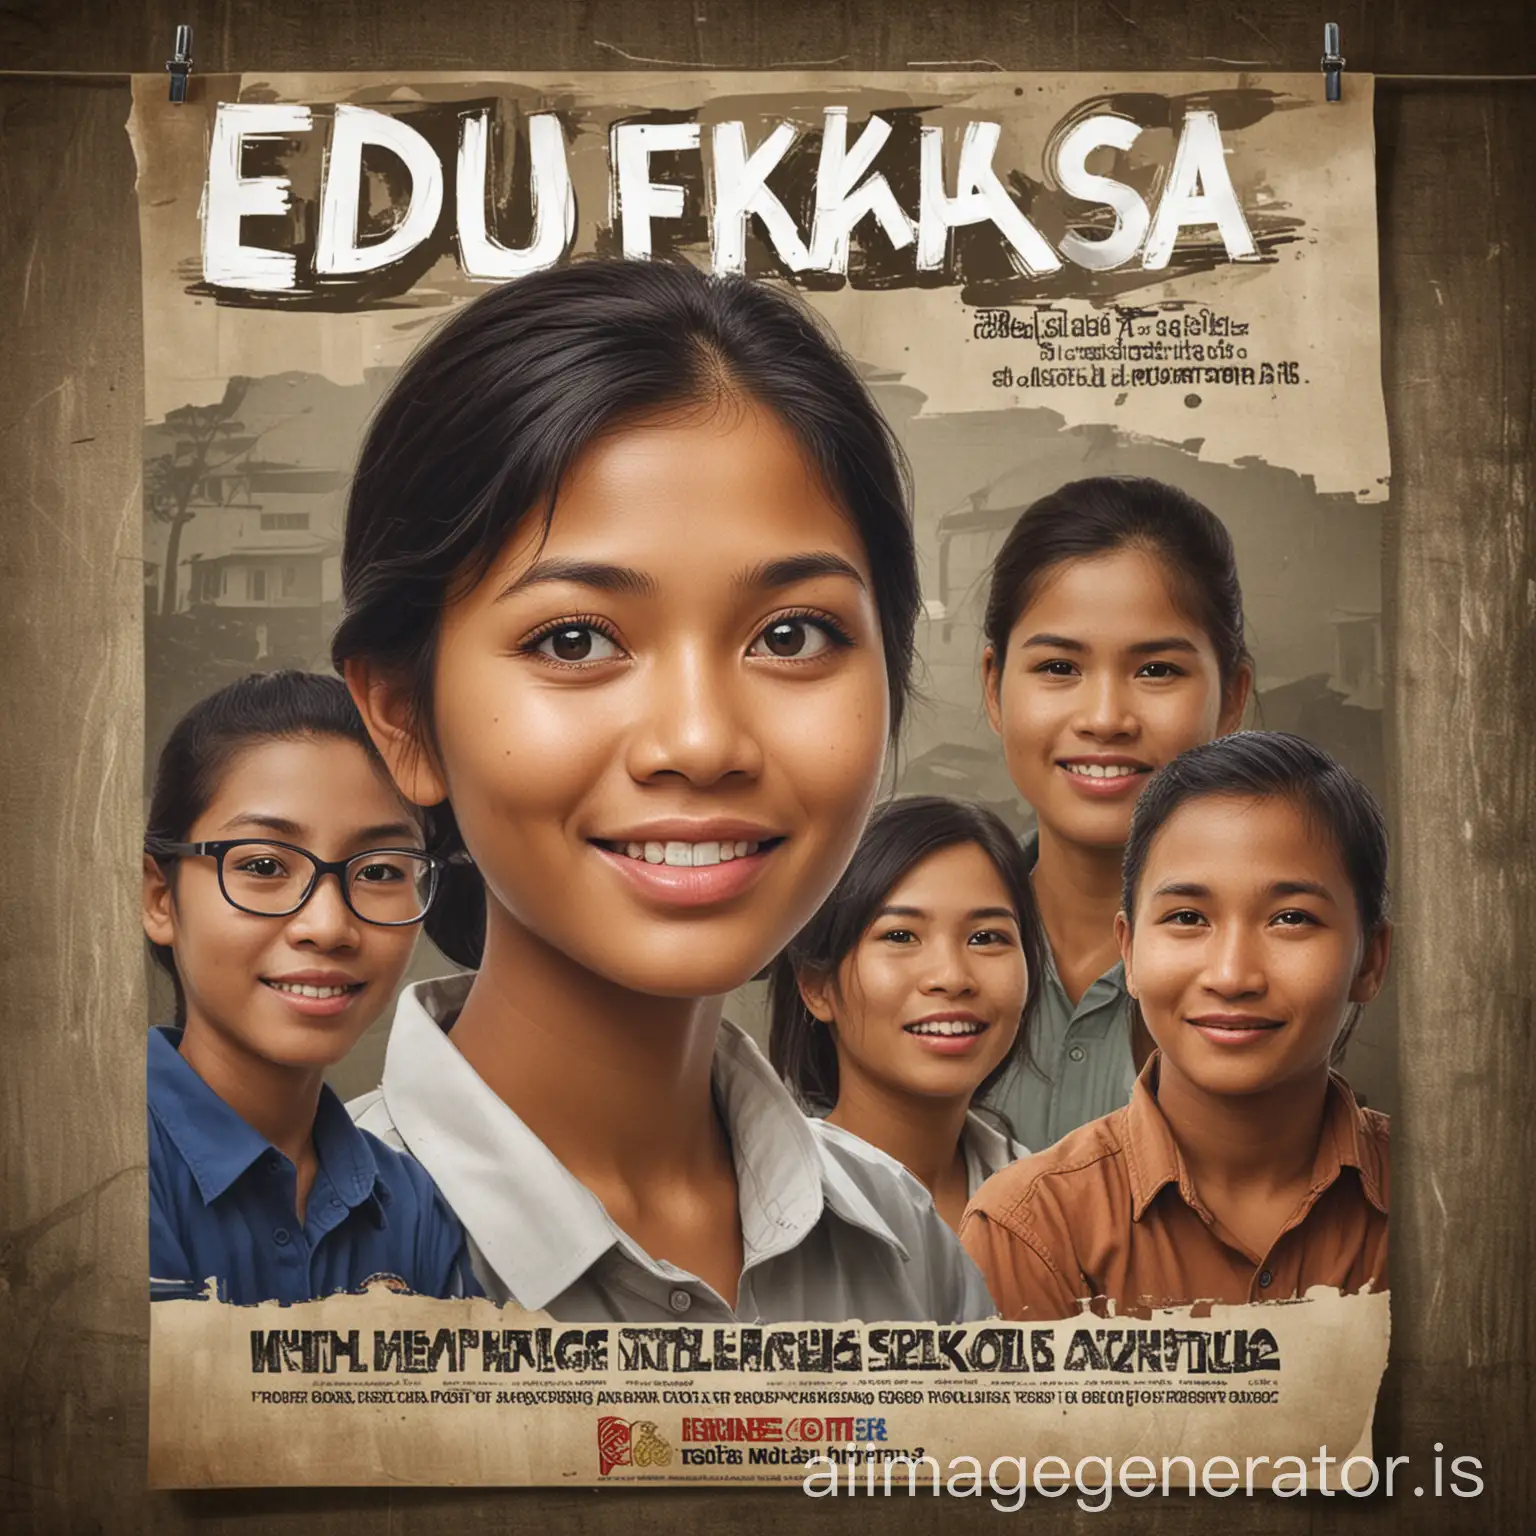 EDUKHASA-Program-Empowering-Barangay-Illiterate-with-TESDA-Education